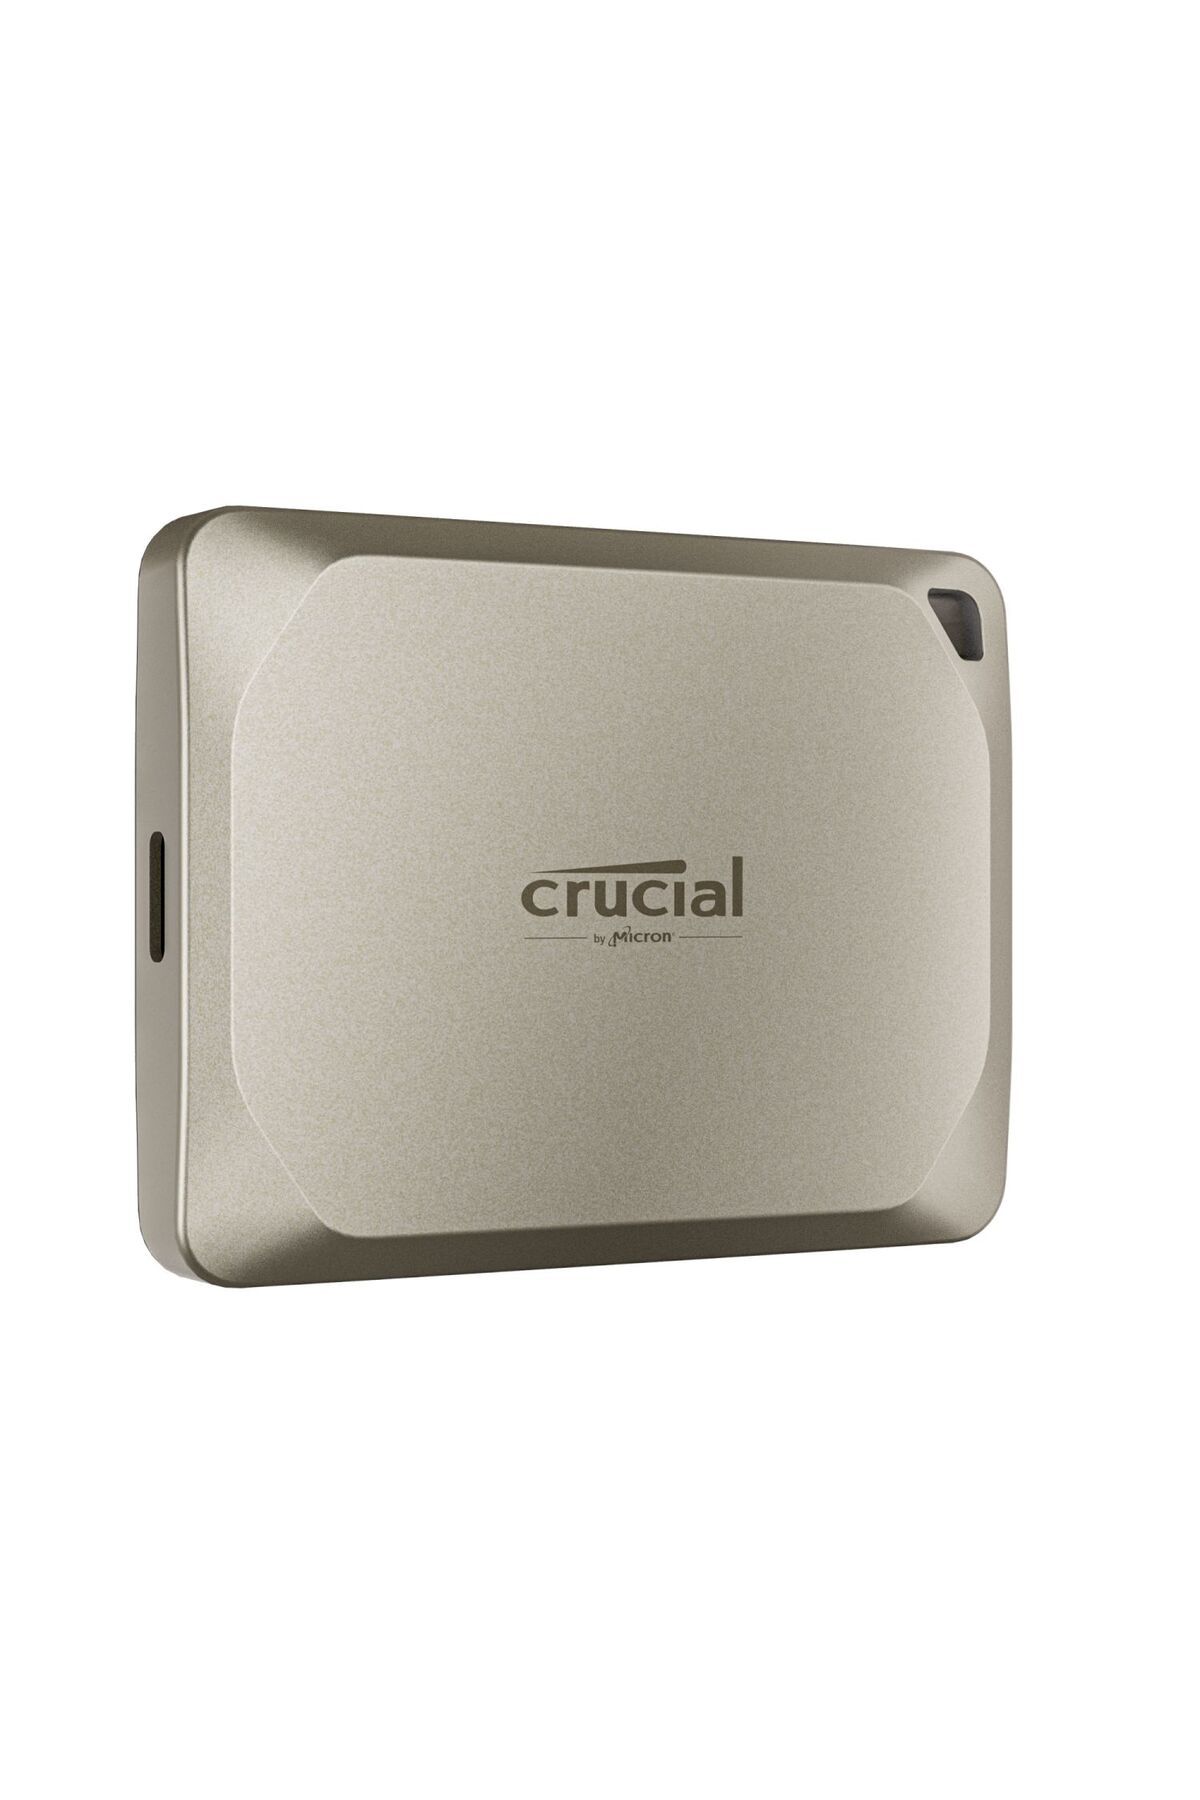 Crucial X9 Pro for Mac 4TB Taşınabilir SSD 1050 MB/s USB 3.2 Gen-2 CT4000X9PROMACSSD9B